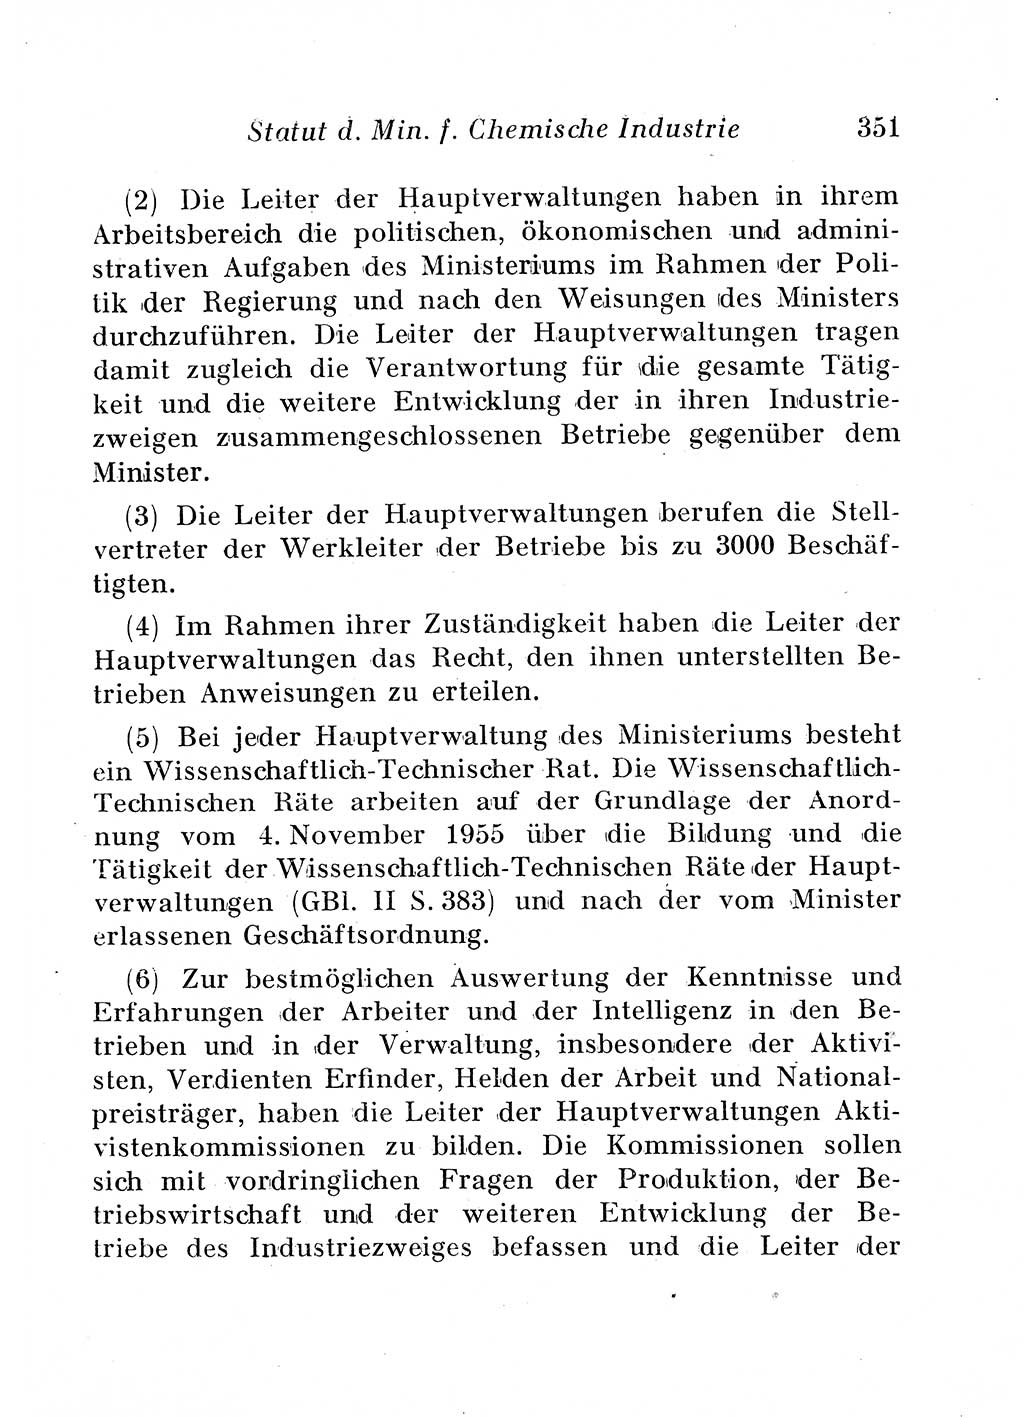 Staats- und verwaltungsrechtliche Gesetze der Deutschen Demokratischen Republik (DDR) 1958, Seite 351 (StVerwR Ges. DDR 1958, S. 351)